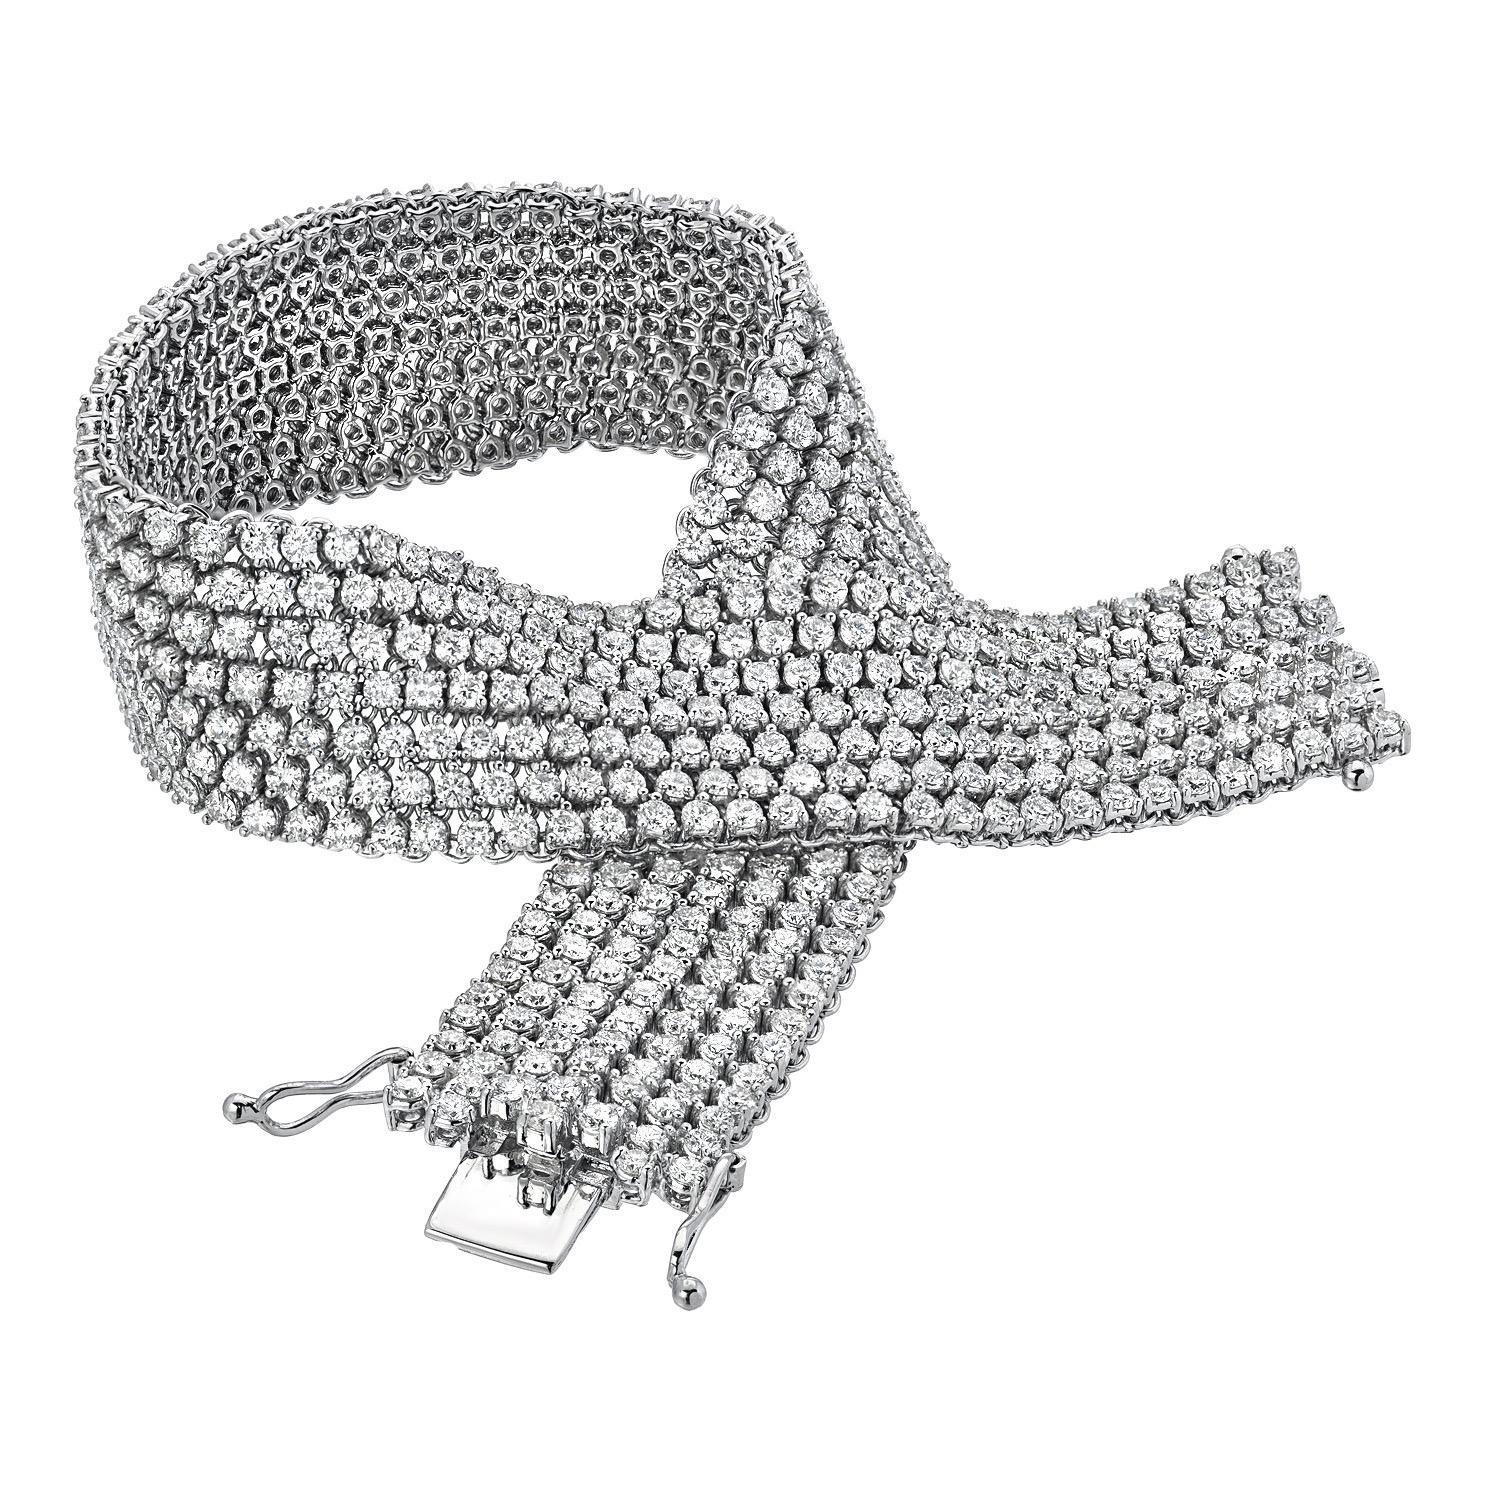 Magnifique bracelet de tennis en diamant flexible, pesant un total de 10,99 carats. 
Couleur du diamant : G-H
Clarté du diamant : VS-SI1
Longueur totale du bracelet en diamant - 7.25